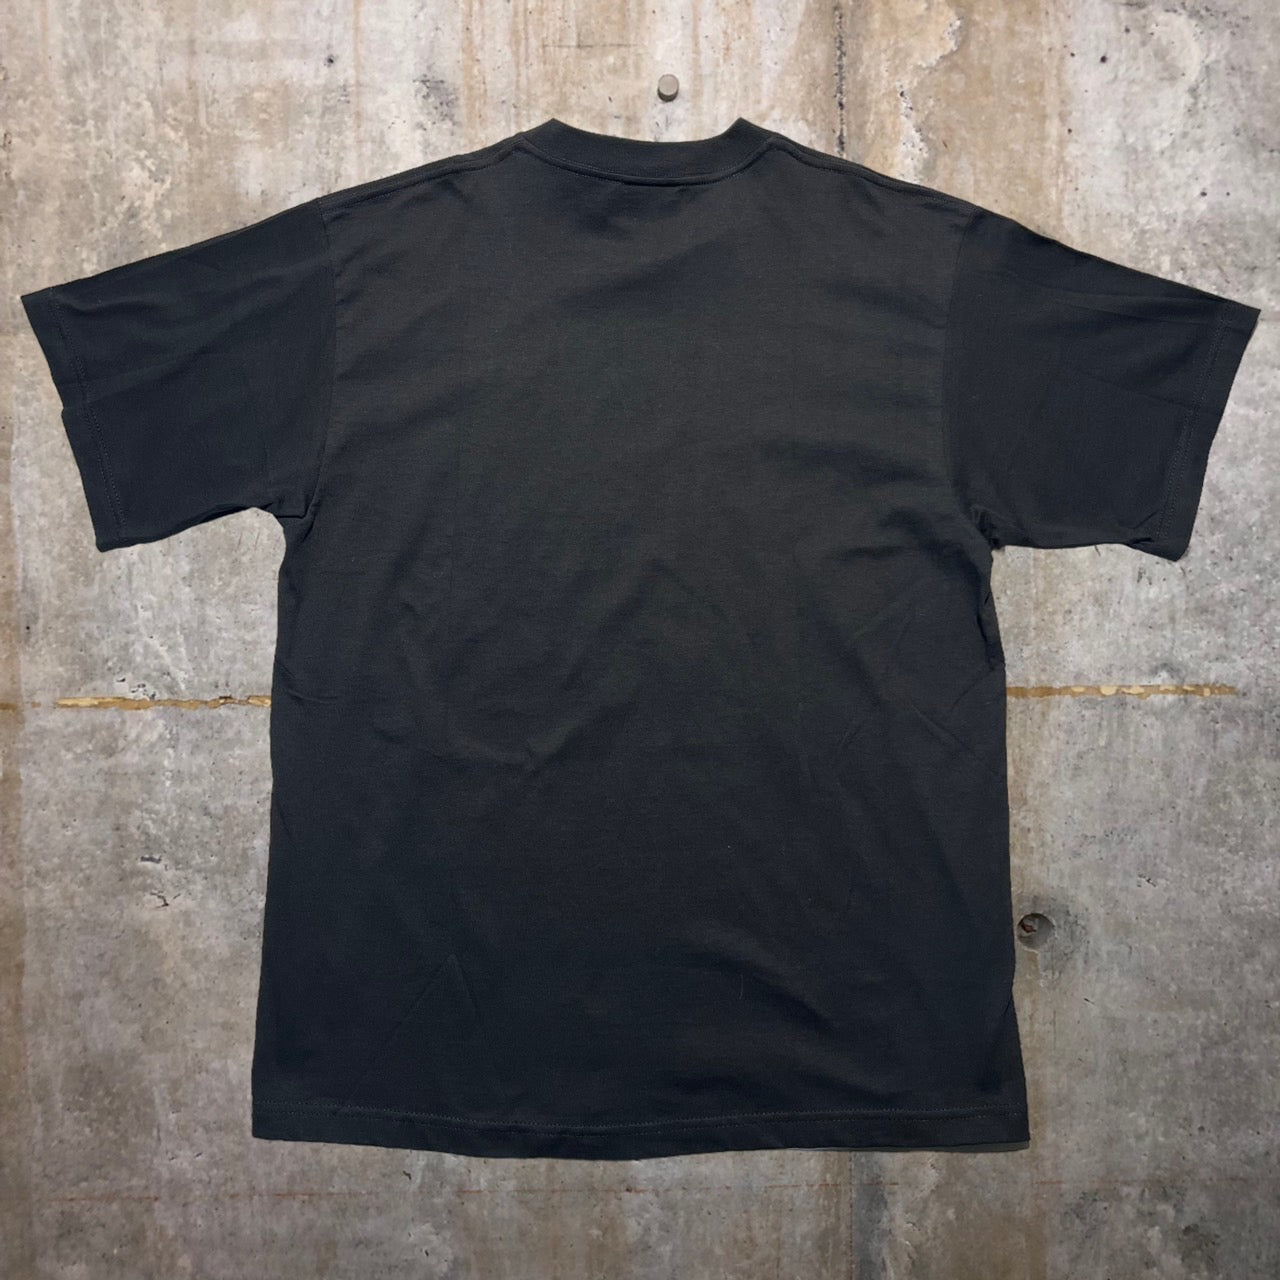 NIKE(ナイキ) 90's USメイドスウッシュロゴTシャツ M ブラック デッドストック